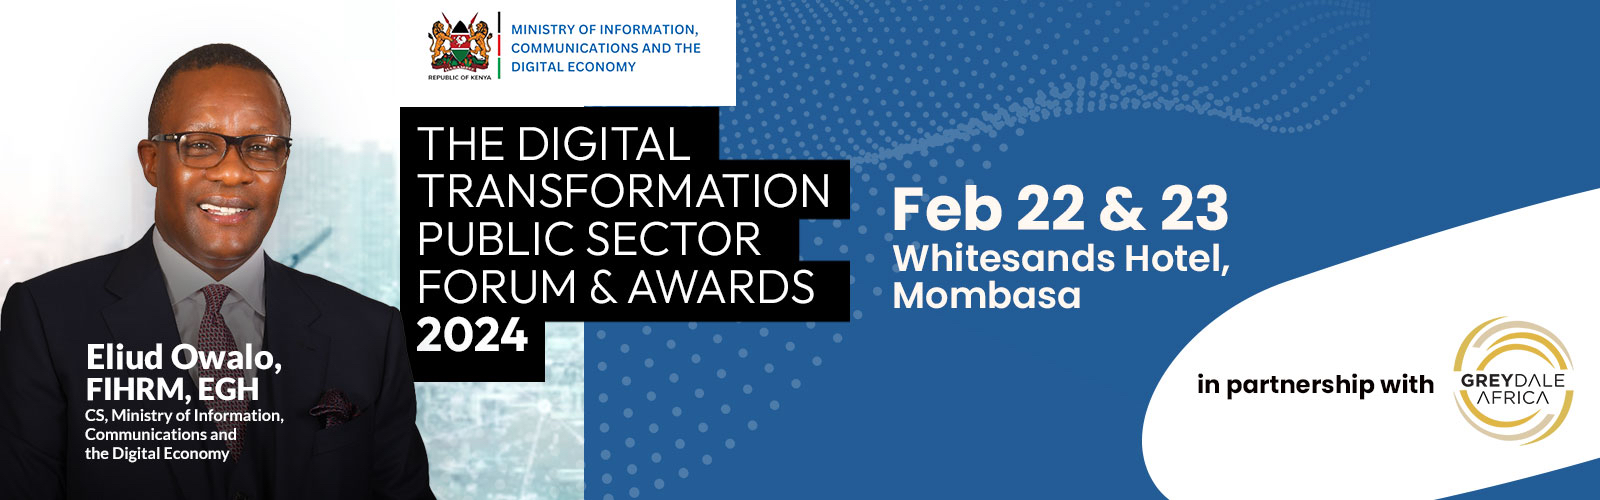 digital transformation awards